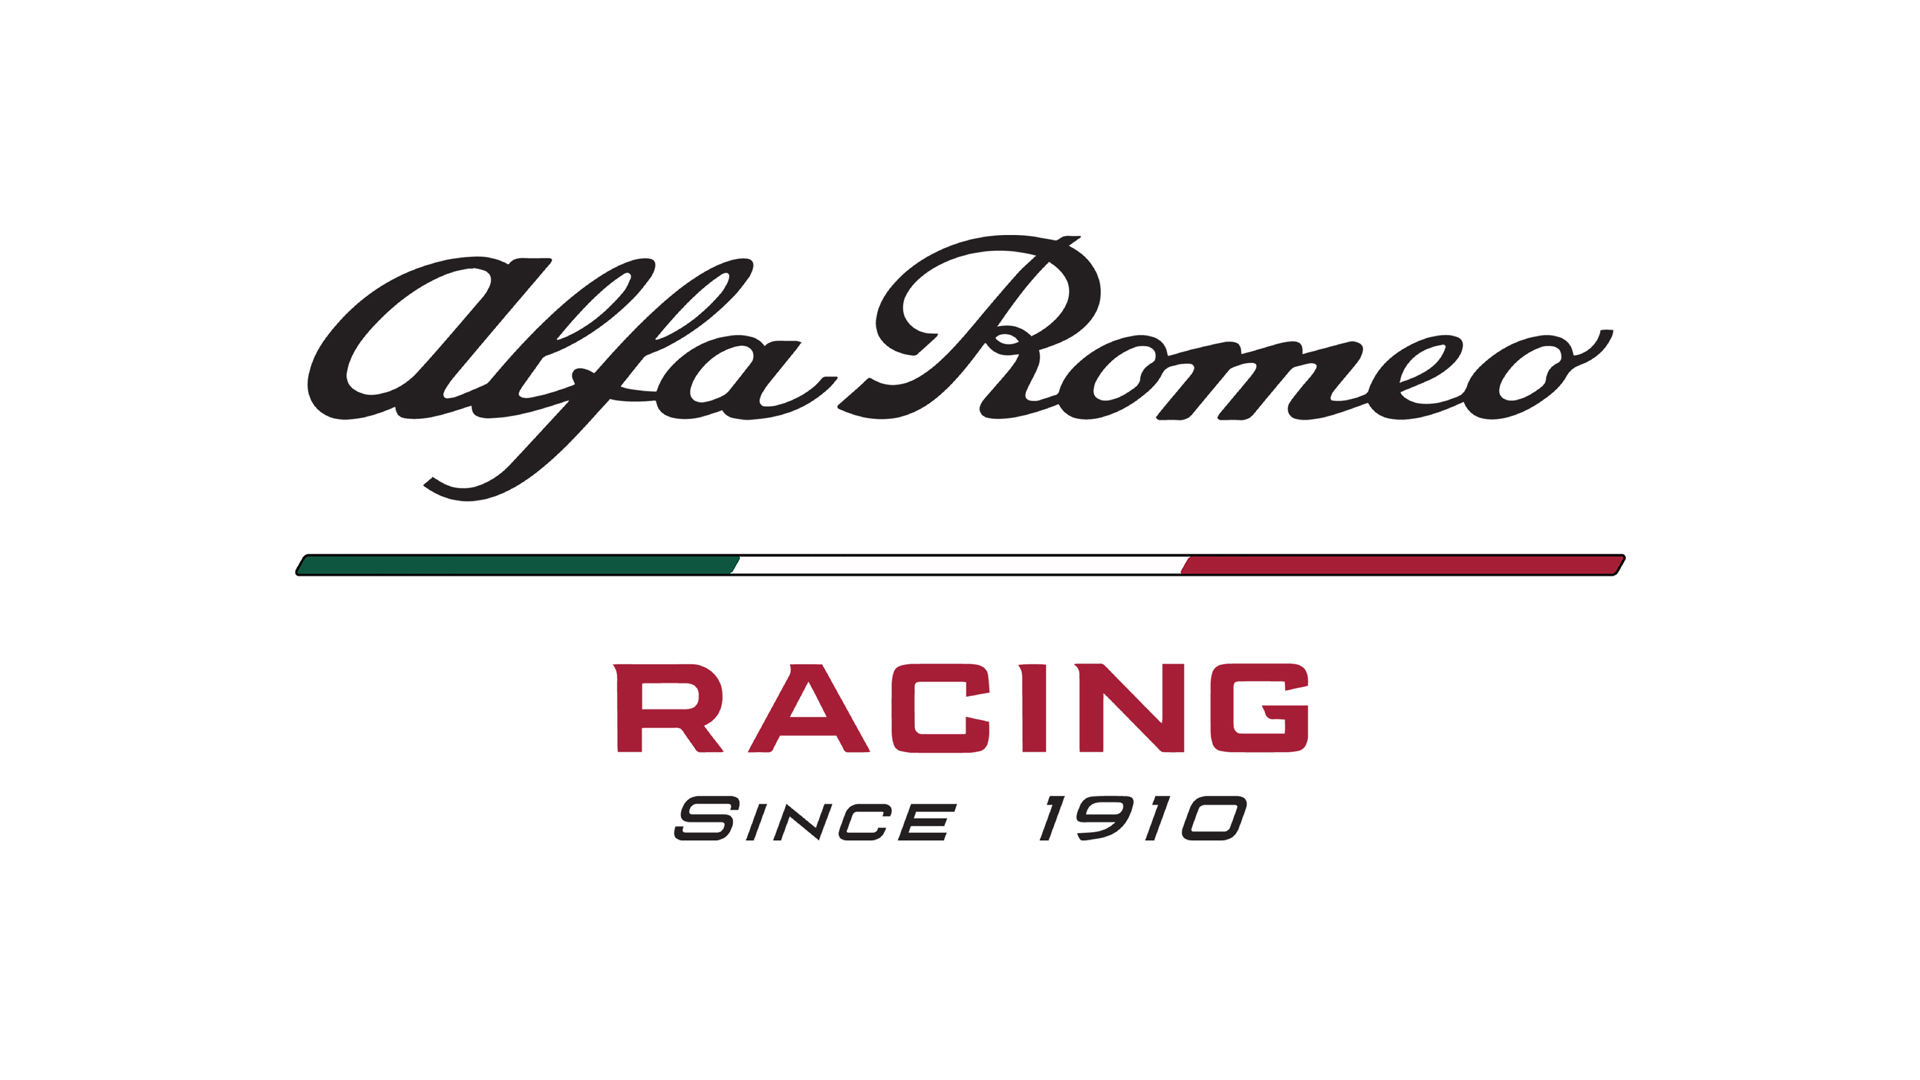 ساوبر تغير اسمها الى الفا روميو في الفورمولا 1 1